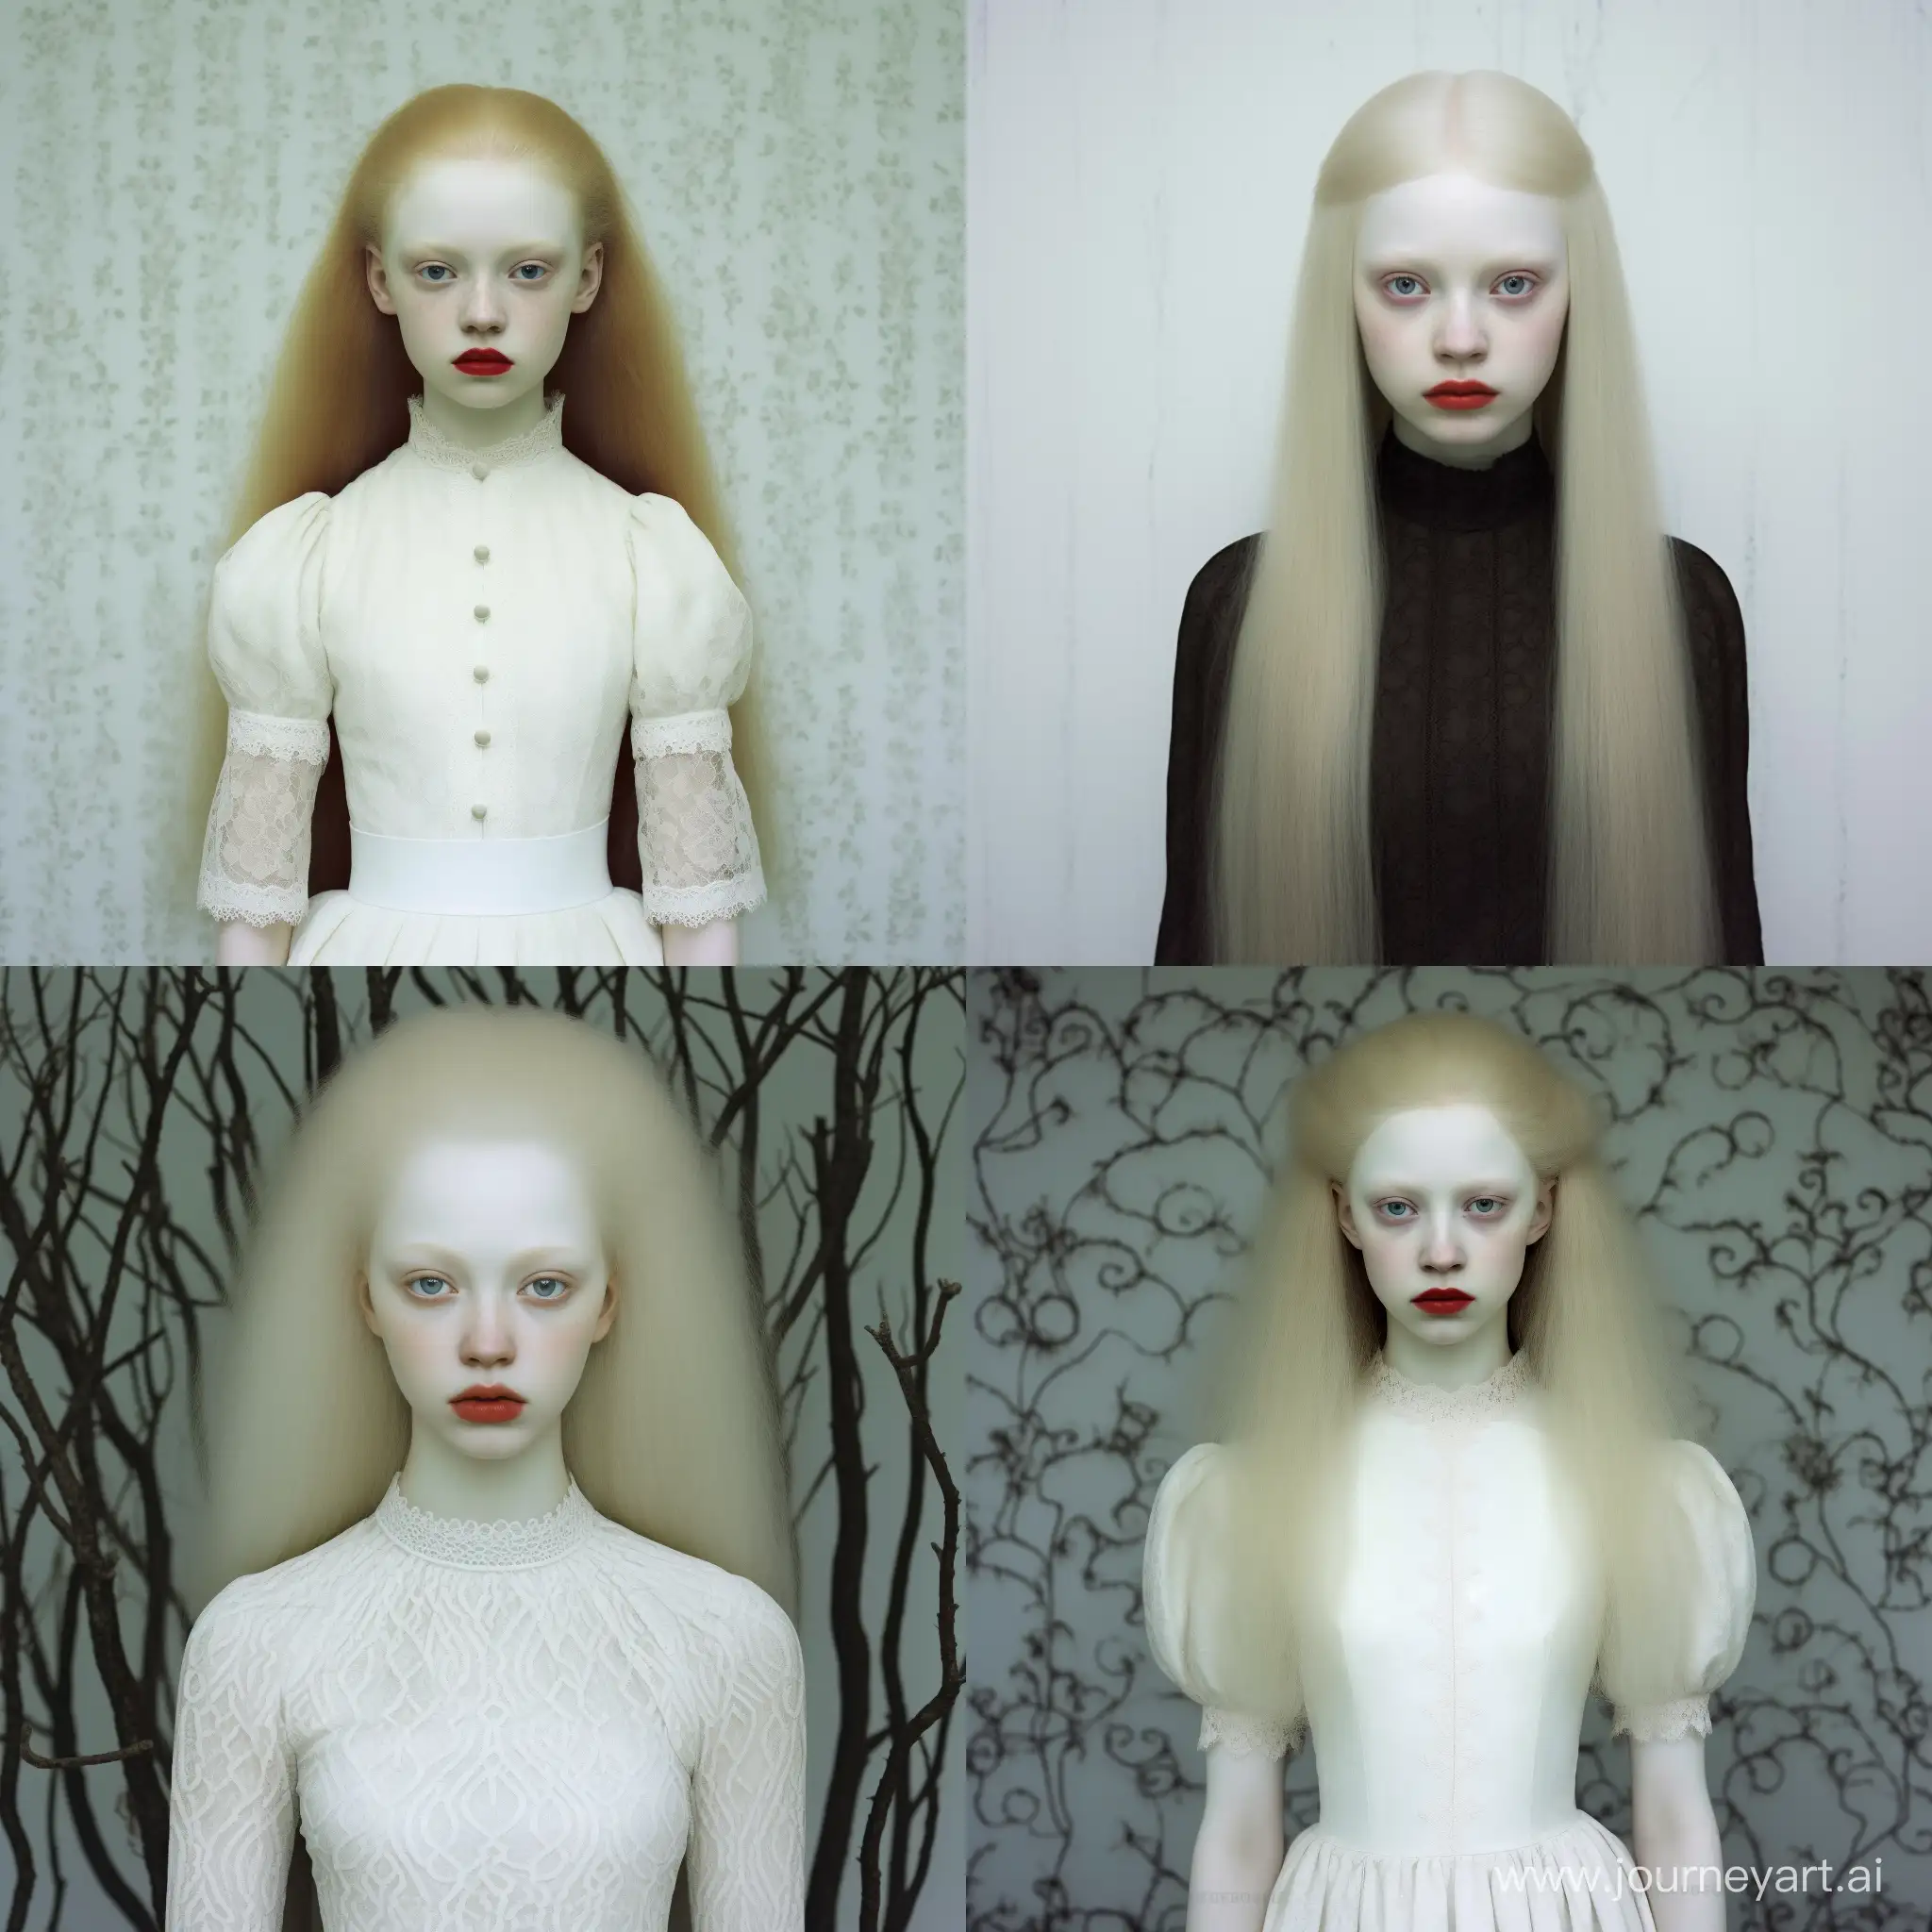 A beautiful albino girl, she is 20 years old